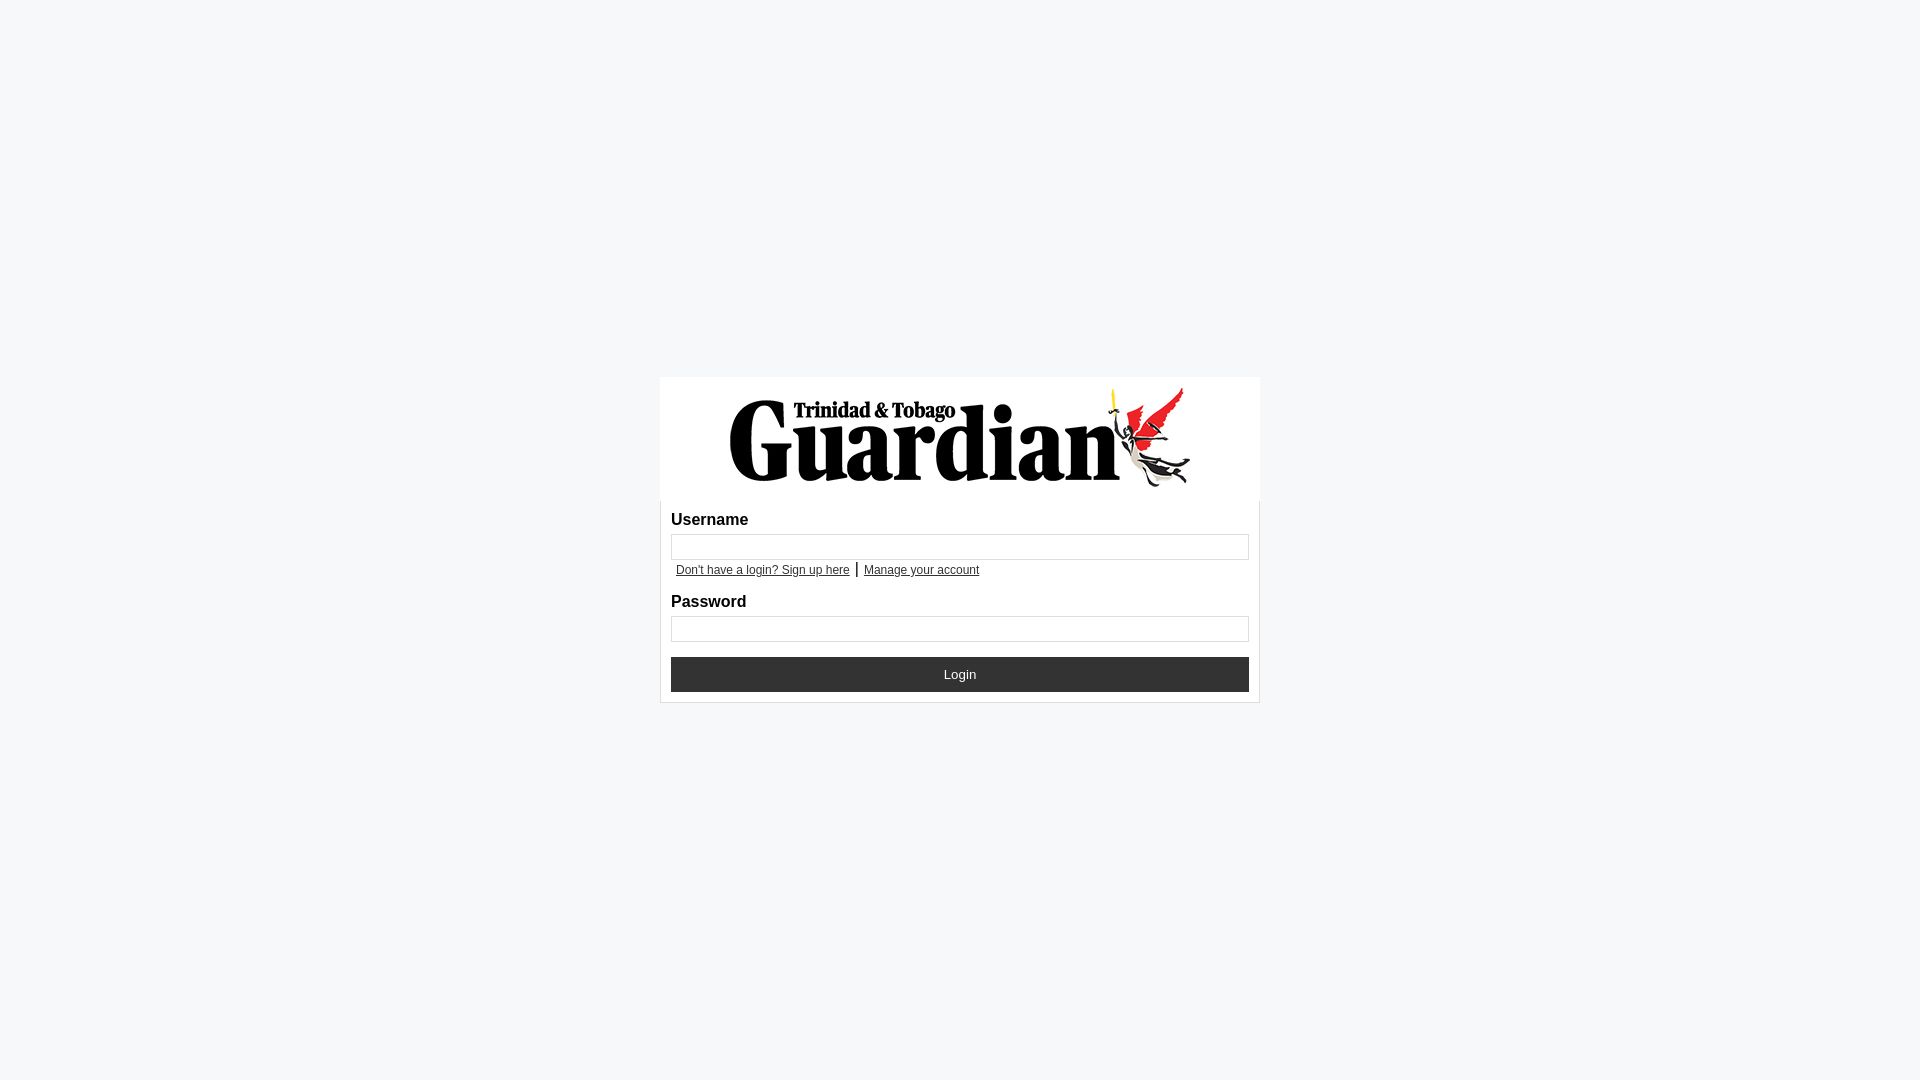 État du site web digital.guardian.co.tt est   EN LIGNE